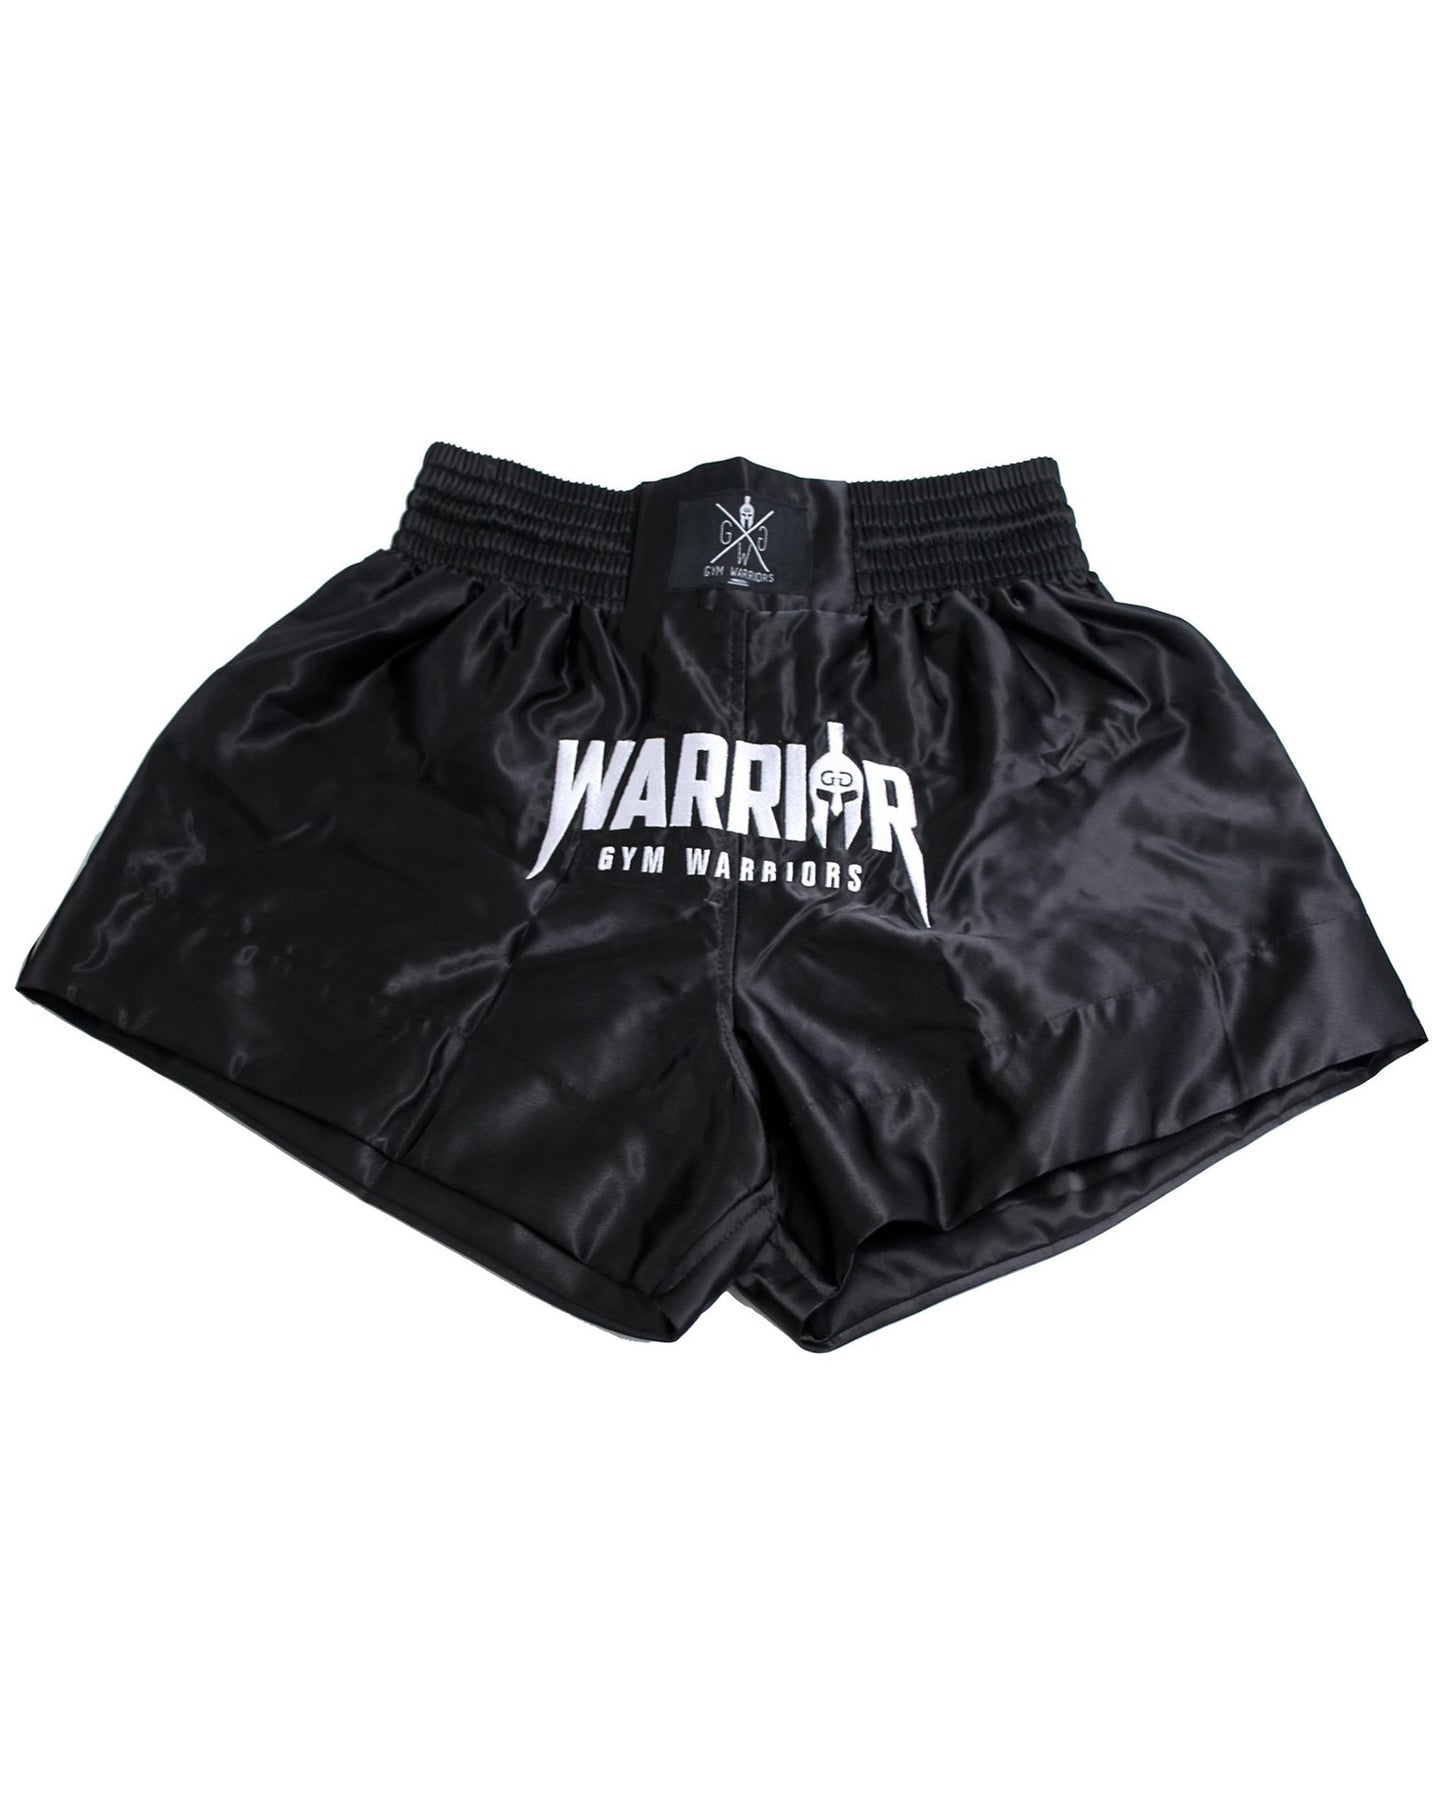 Gym Generation Muay Thai Shorts mit auffälligem 'Warrior' Stick auf der Vorderseite, ideal für Kampfsportler.